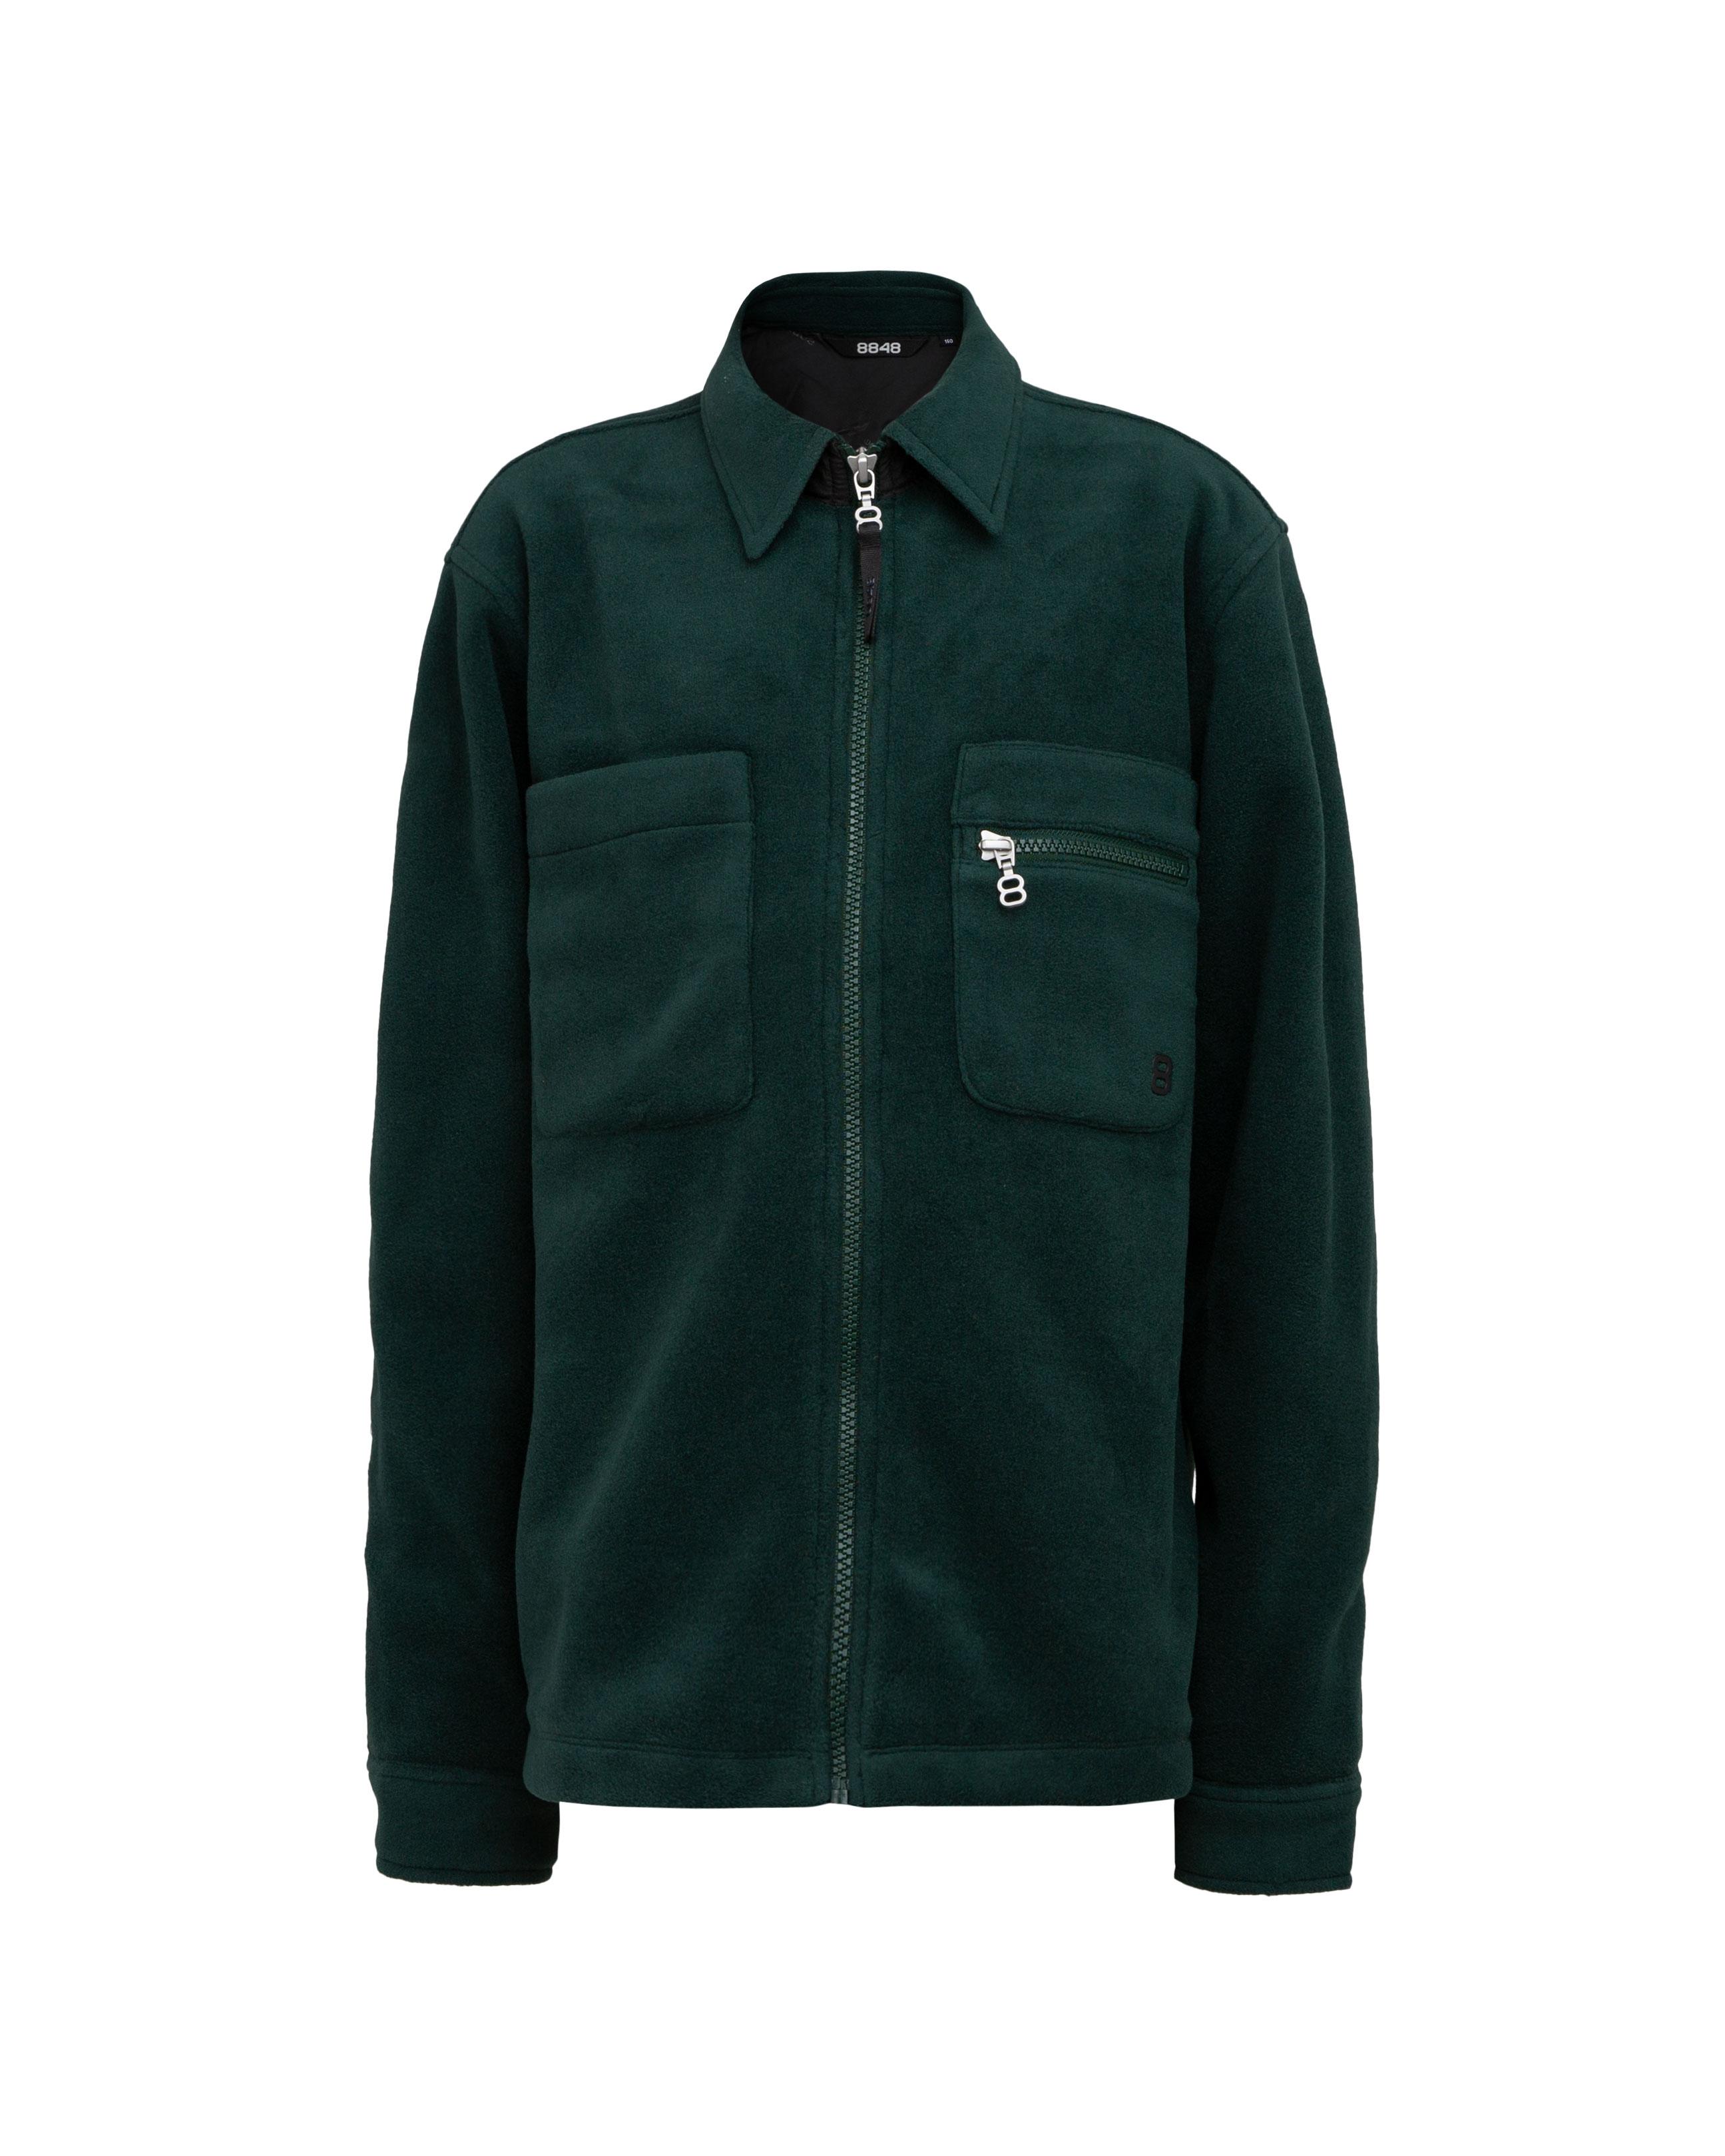 Heim JR Fleece Jacket Emerald Green - Green fleece kids